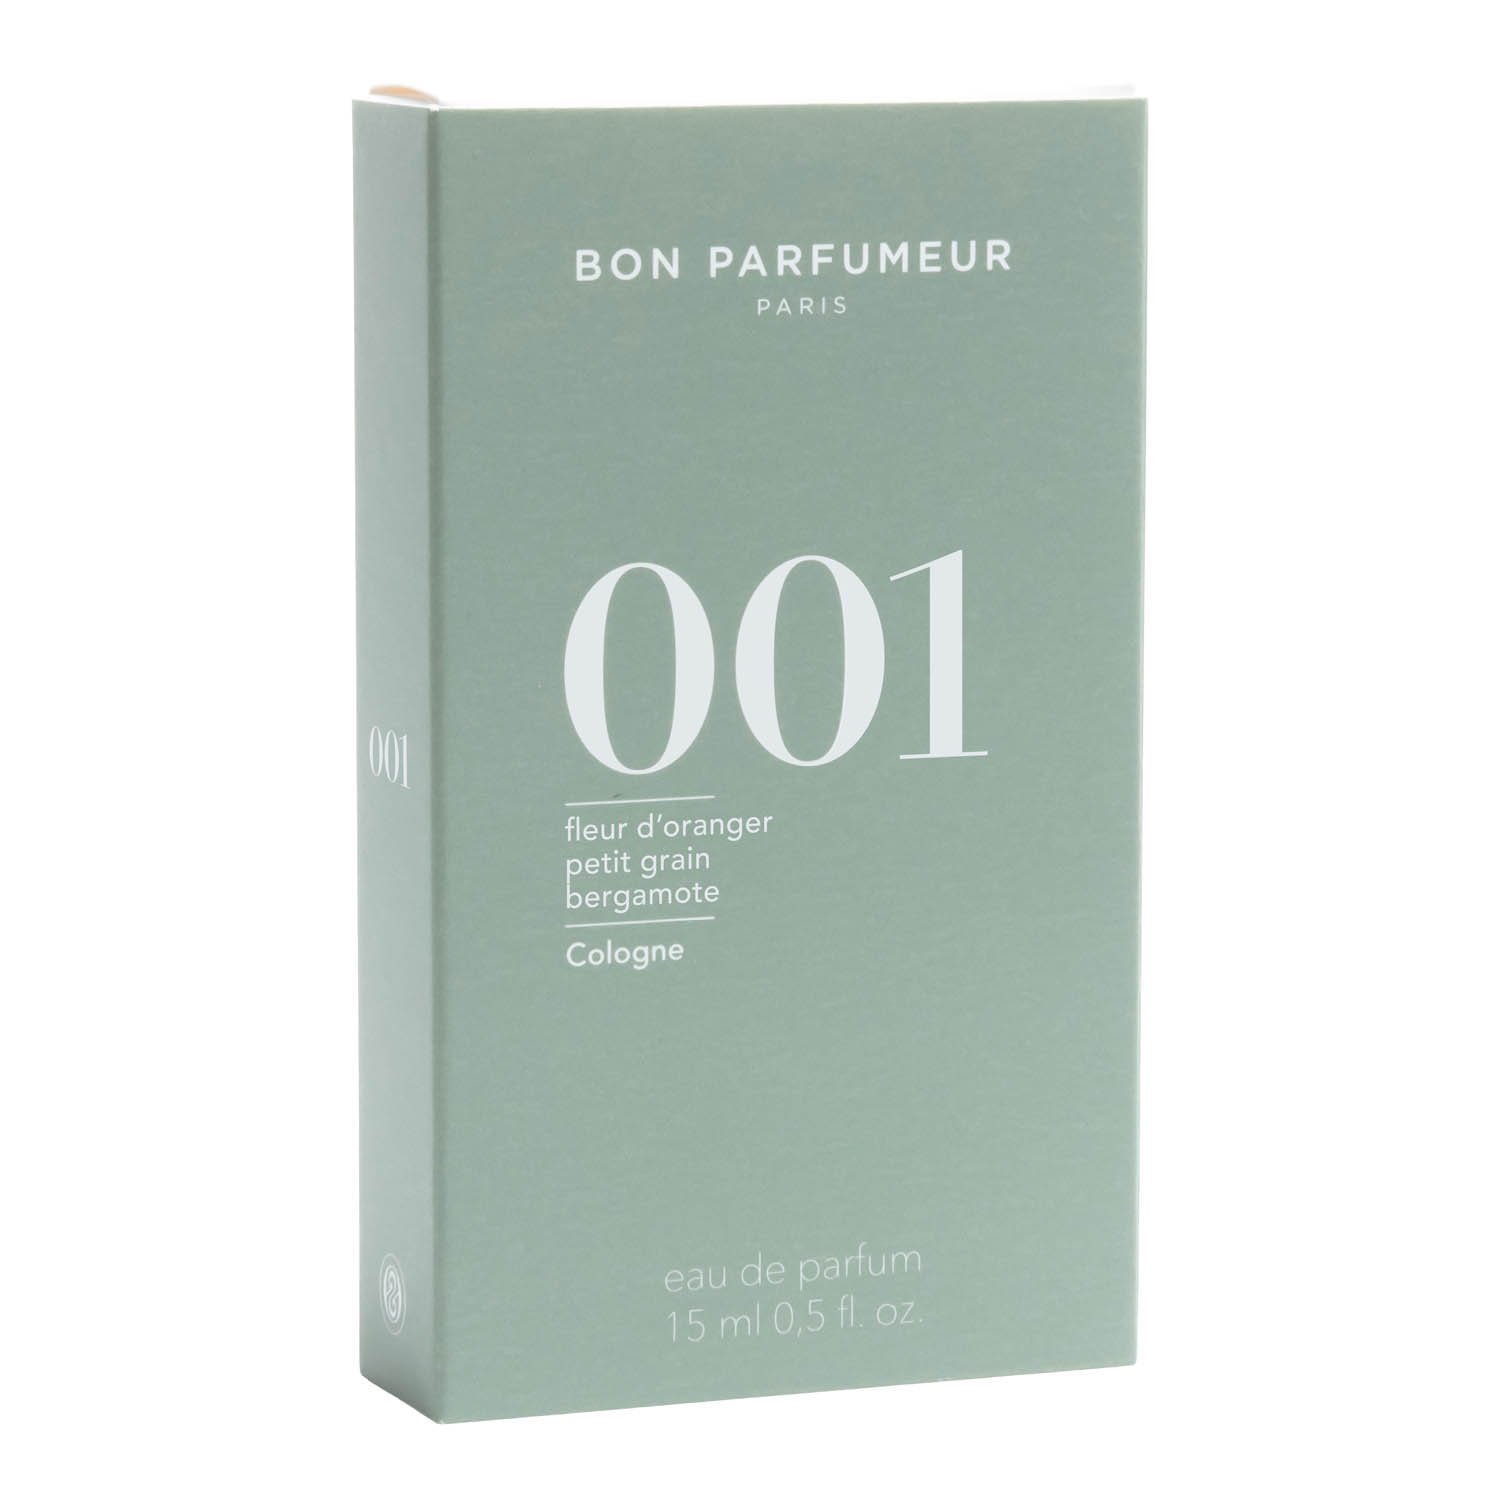 Bon Parfumeur Cologne 001 15 ml